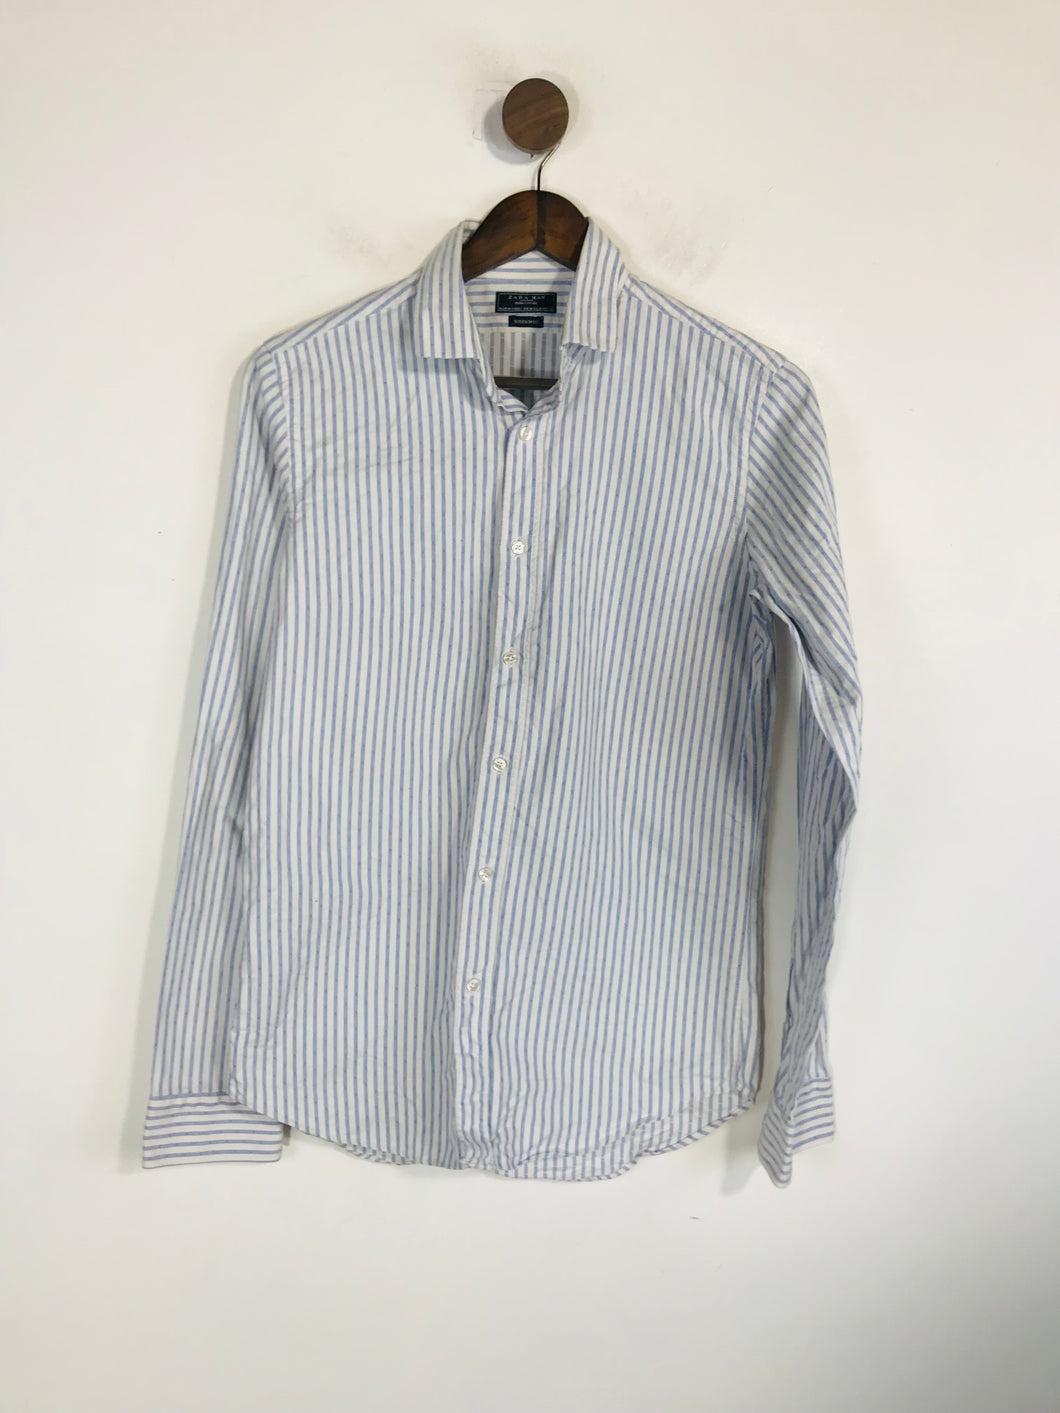 Zara Men's Striped Button-Up Shirt | M | Blue